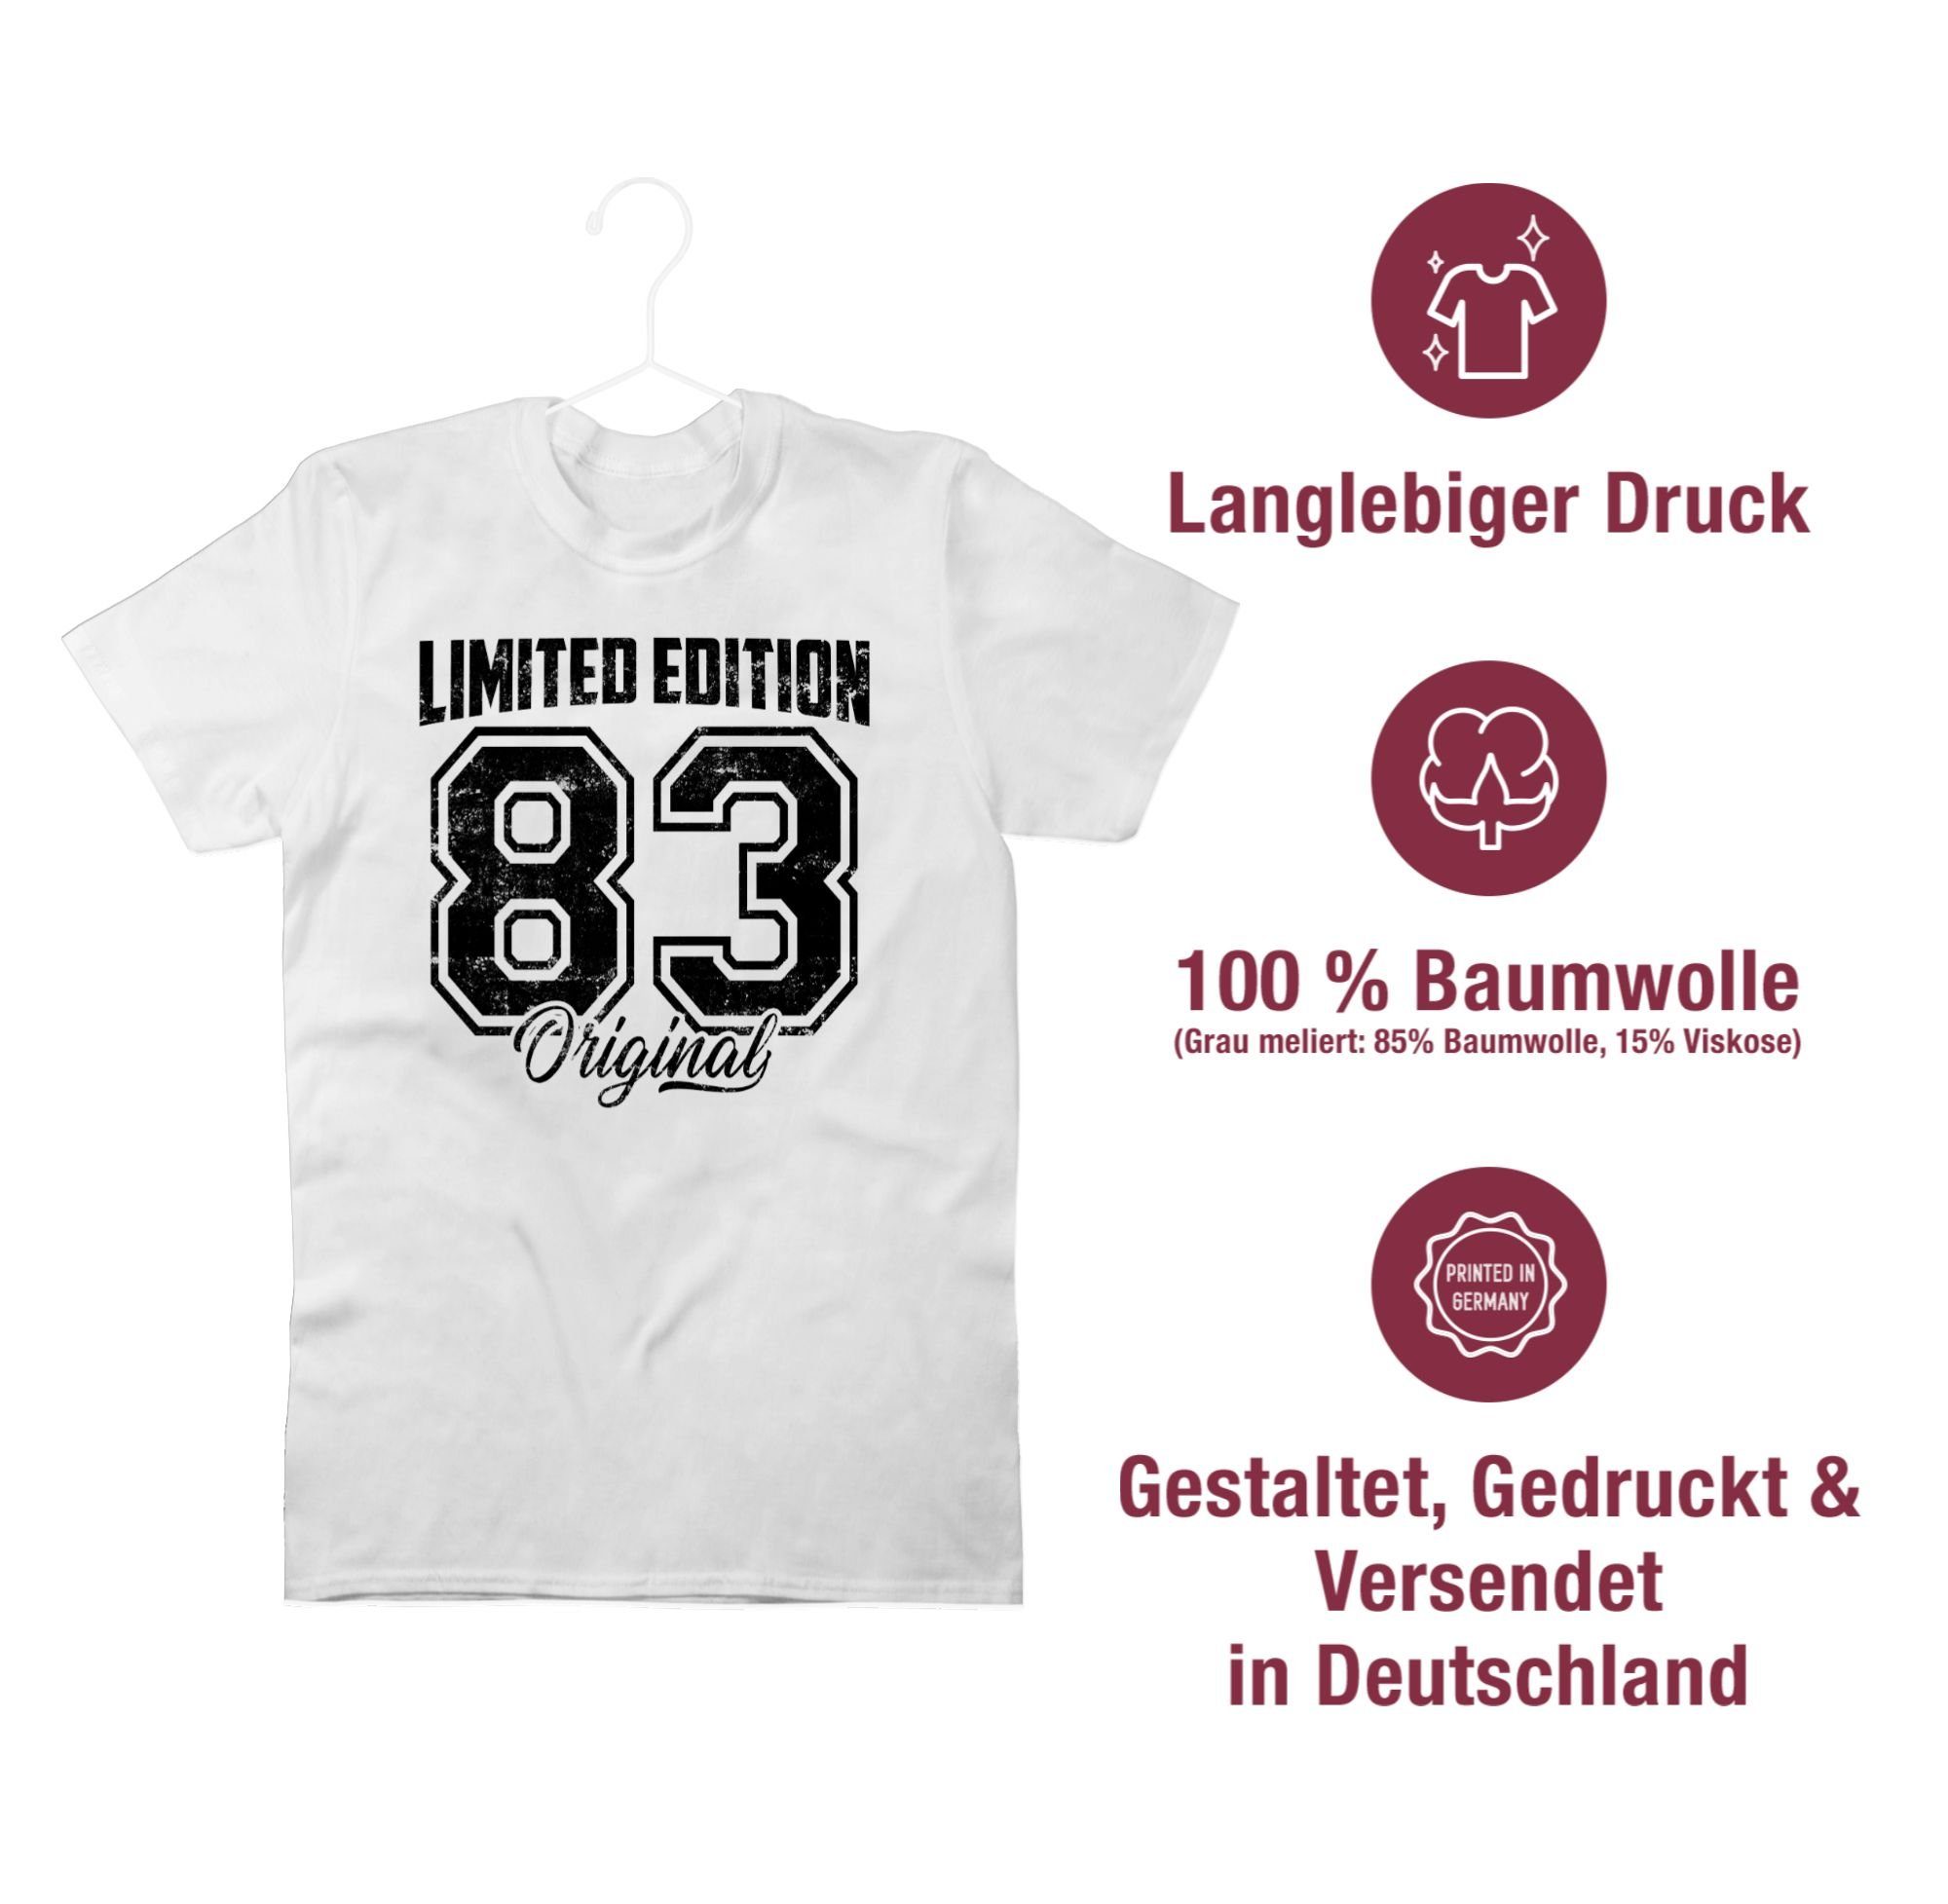 T-Shirt Vierzigster 3 Geburtstag Limited Schwarz 1983 Weiß 40. Edition Original Shirtracer Vintage